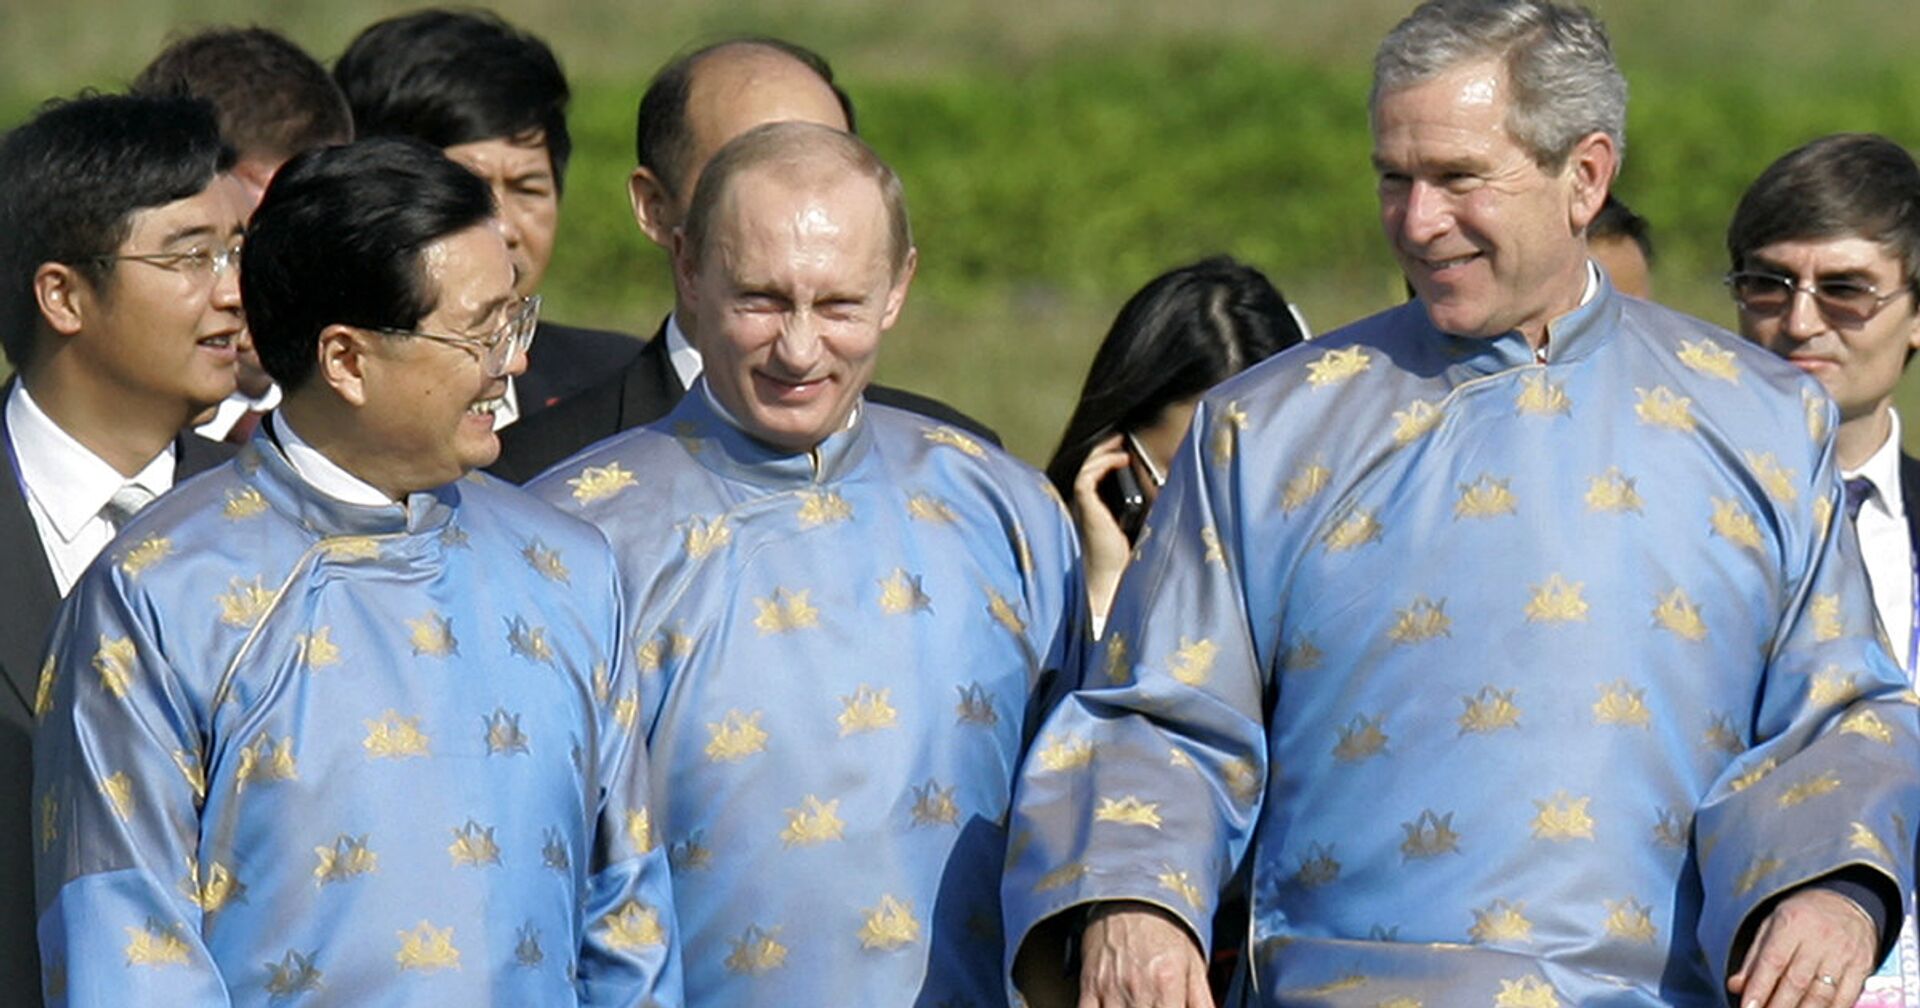 Председатель КНР Ху Цзиньтао, президент России Владимир Путин и президент США Джордж Буш, 19 ноября 2006 года - ИноСМИ, 1920, 29.09.2021